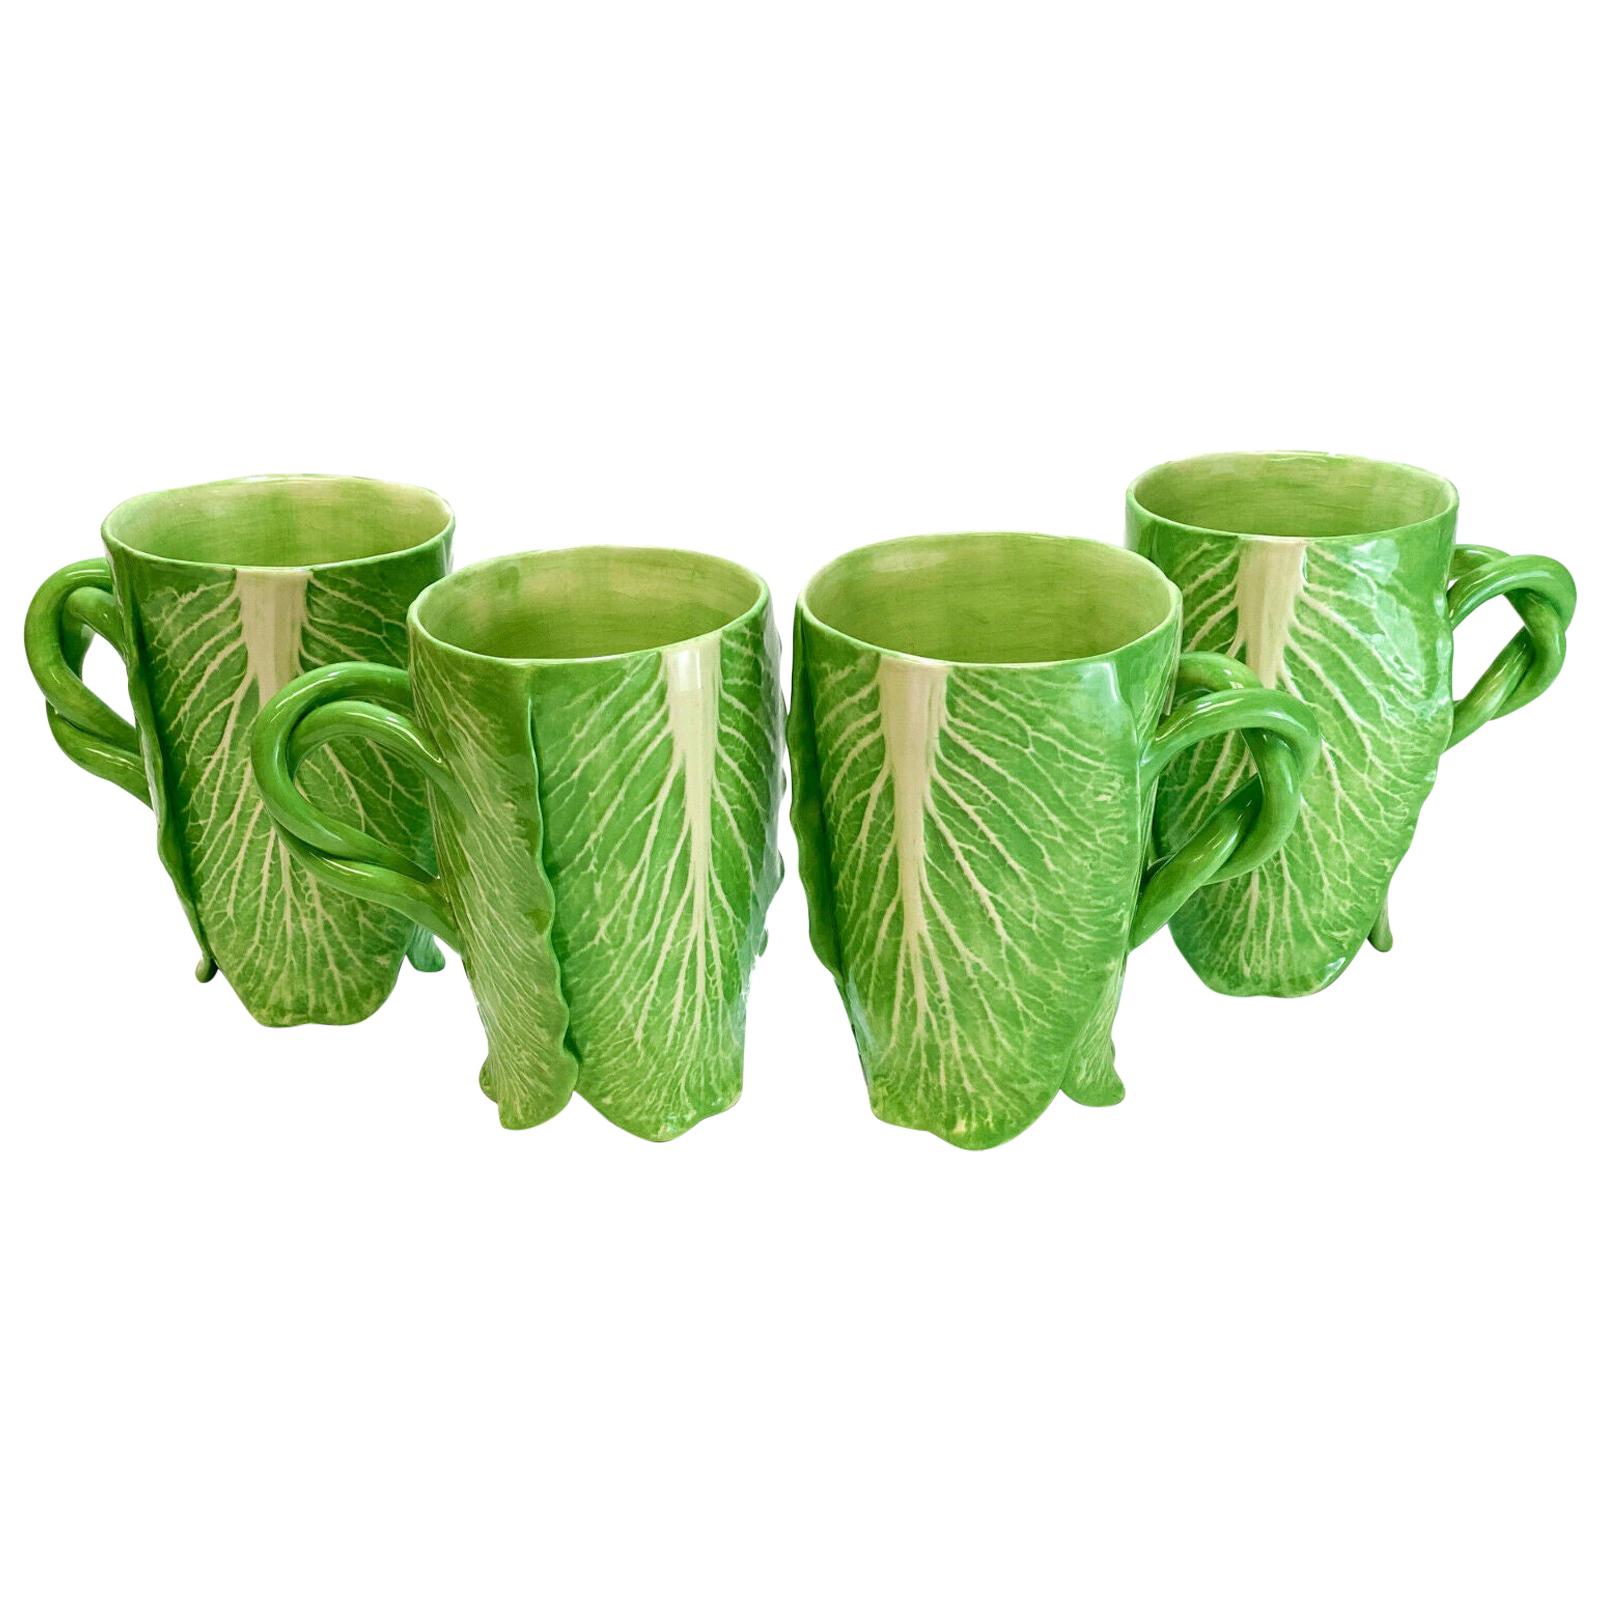 4 Dodie Thayer Jupiter Lettuce Leaf Earthenware Porcelain Hand Crafted Mugs For Sale